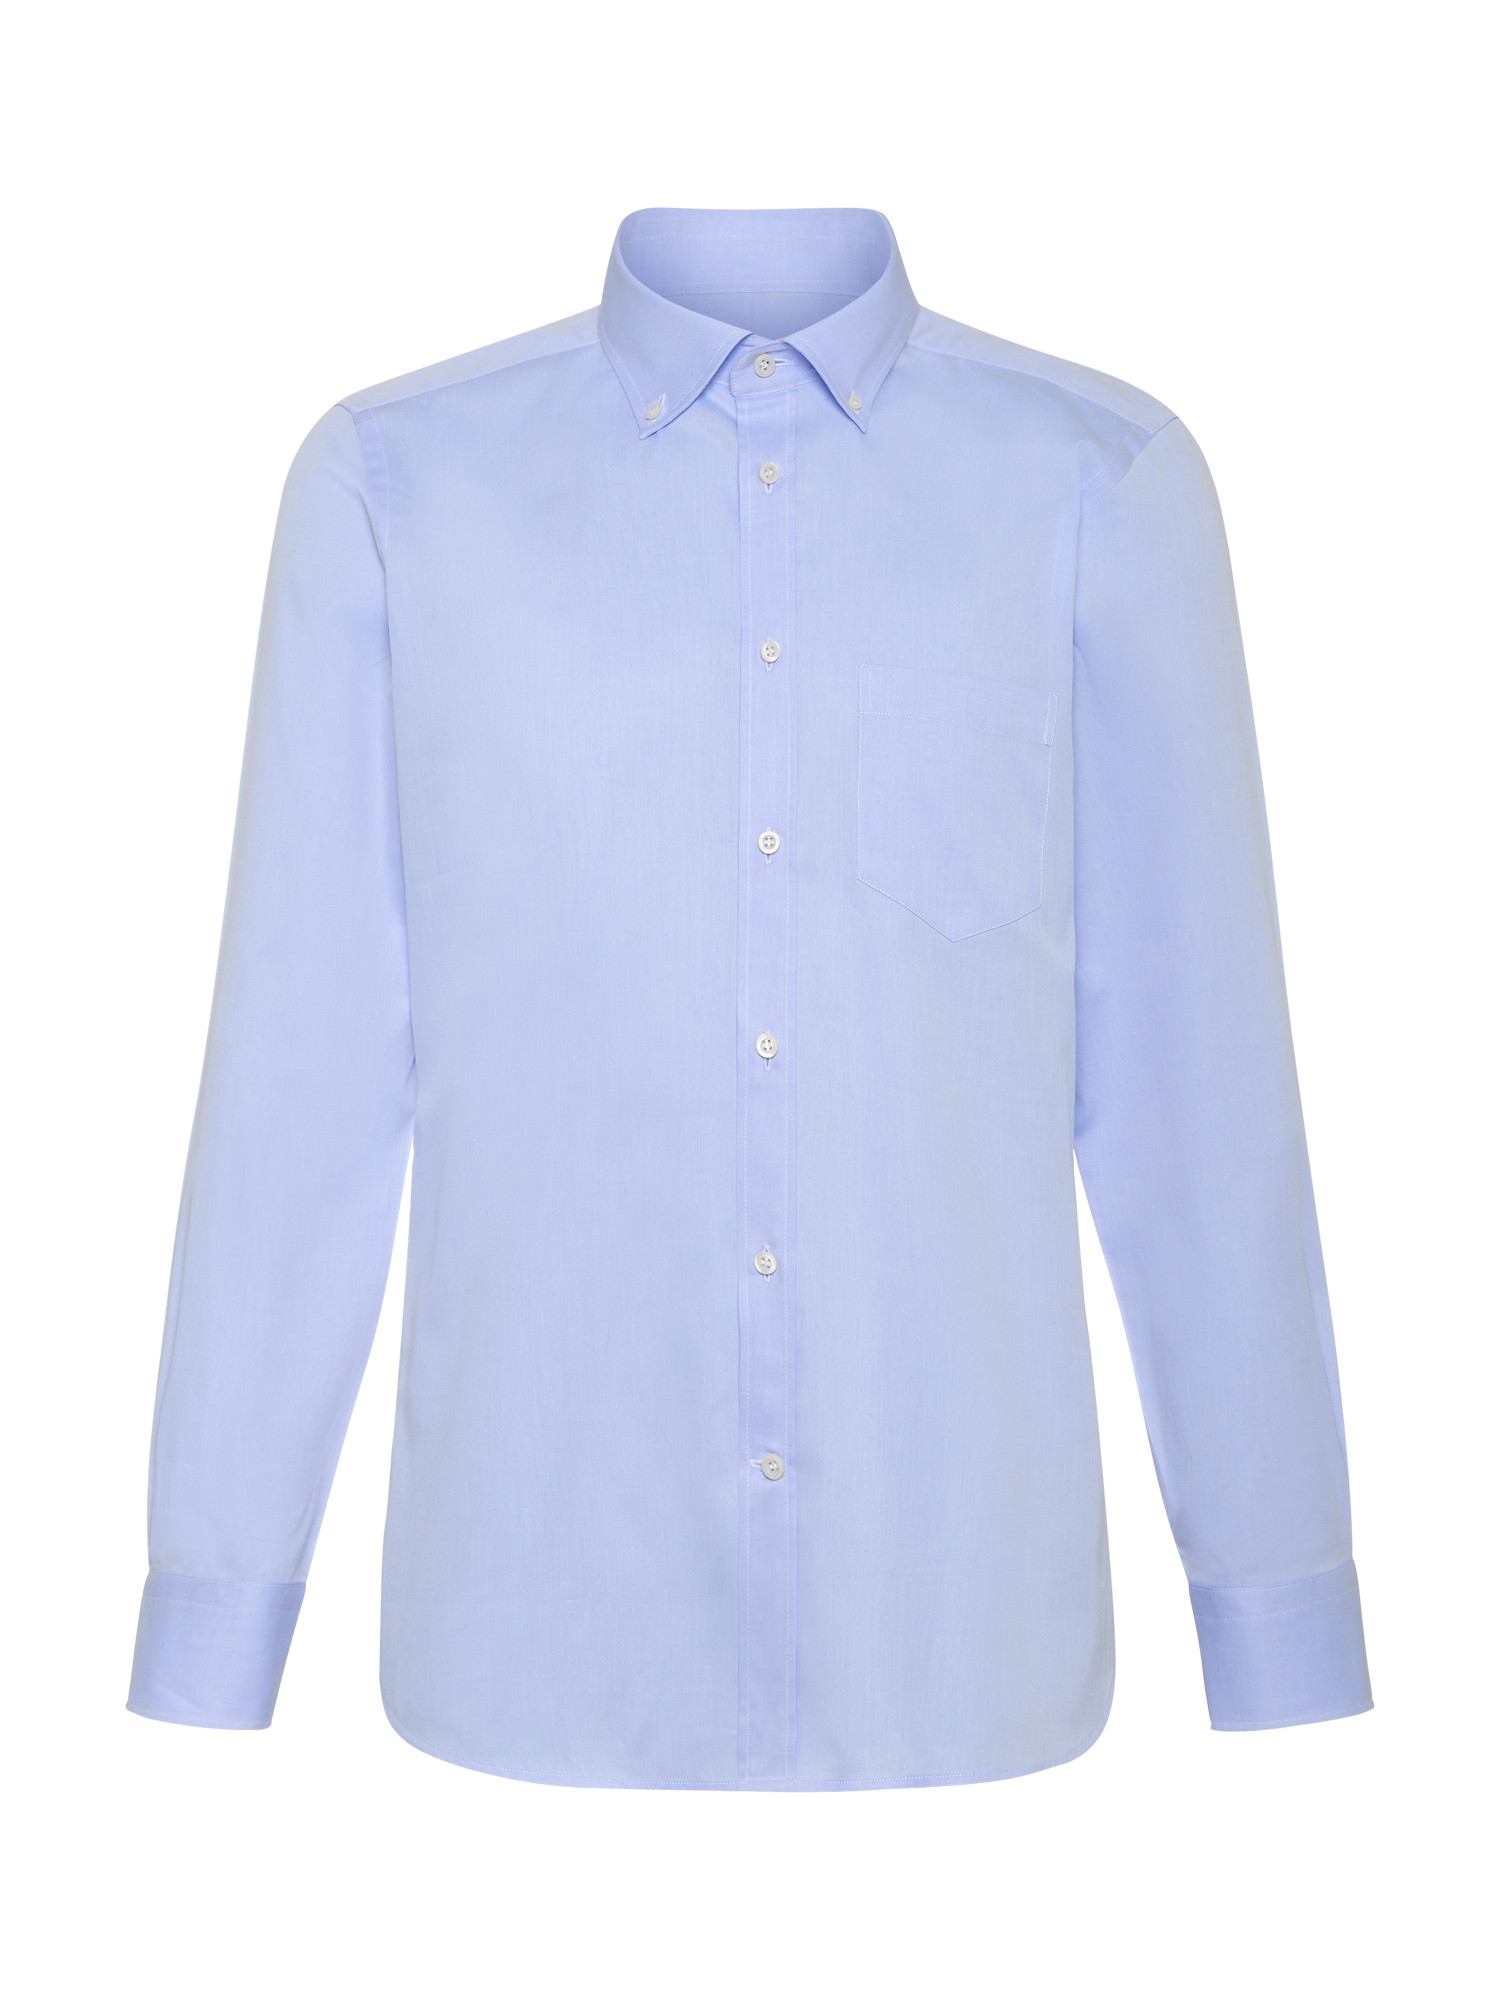 Luca D'Altieri - Camicia casual slim fit in twill di puro cotone, Azzurro, large image number 1